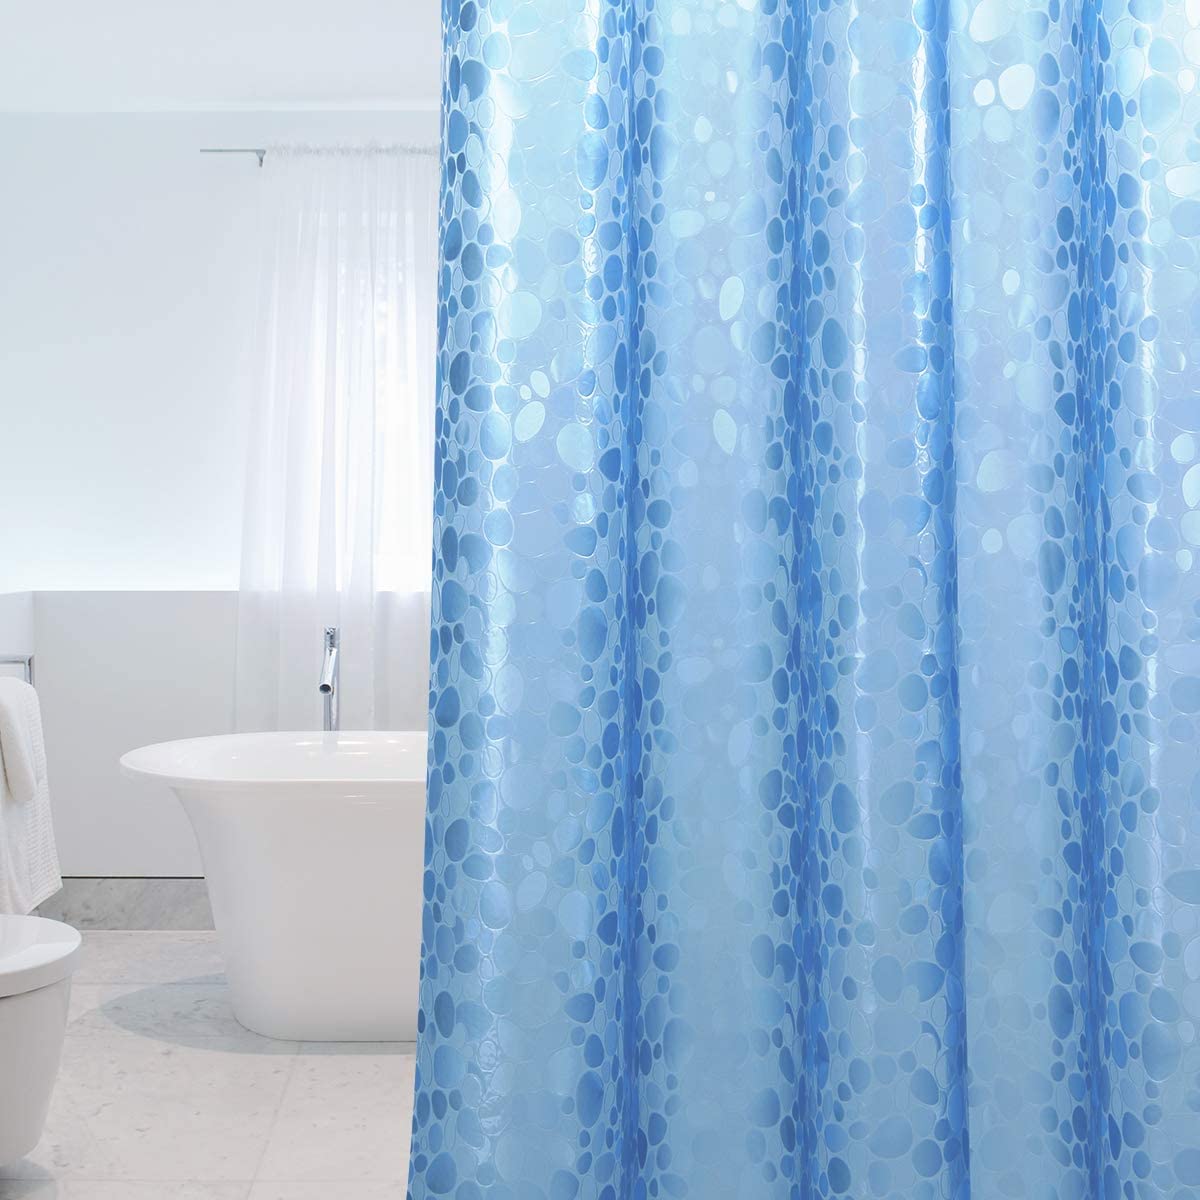 Se Badeforhæng - Smuk blåt mønster. Antibakterielt og vandtæt. 2 størrelser, 183 x 183 cm hos Seniorpleje